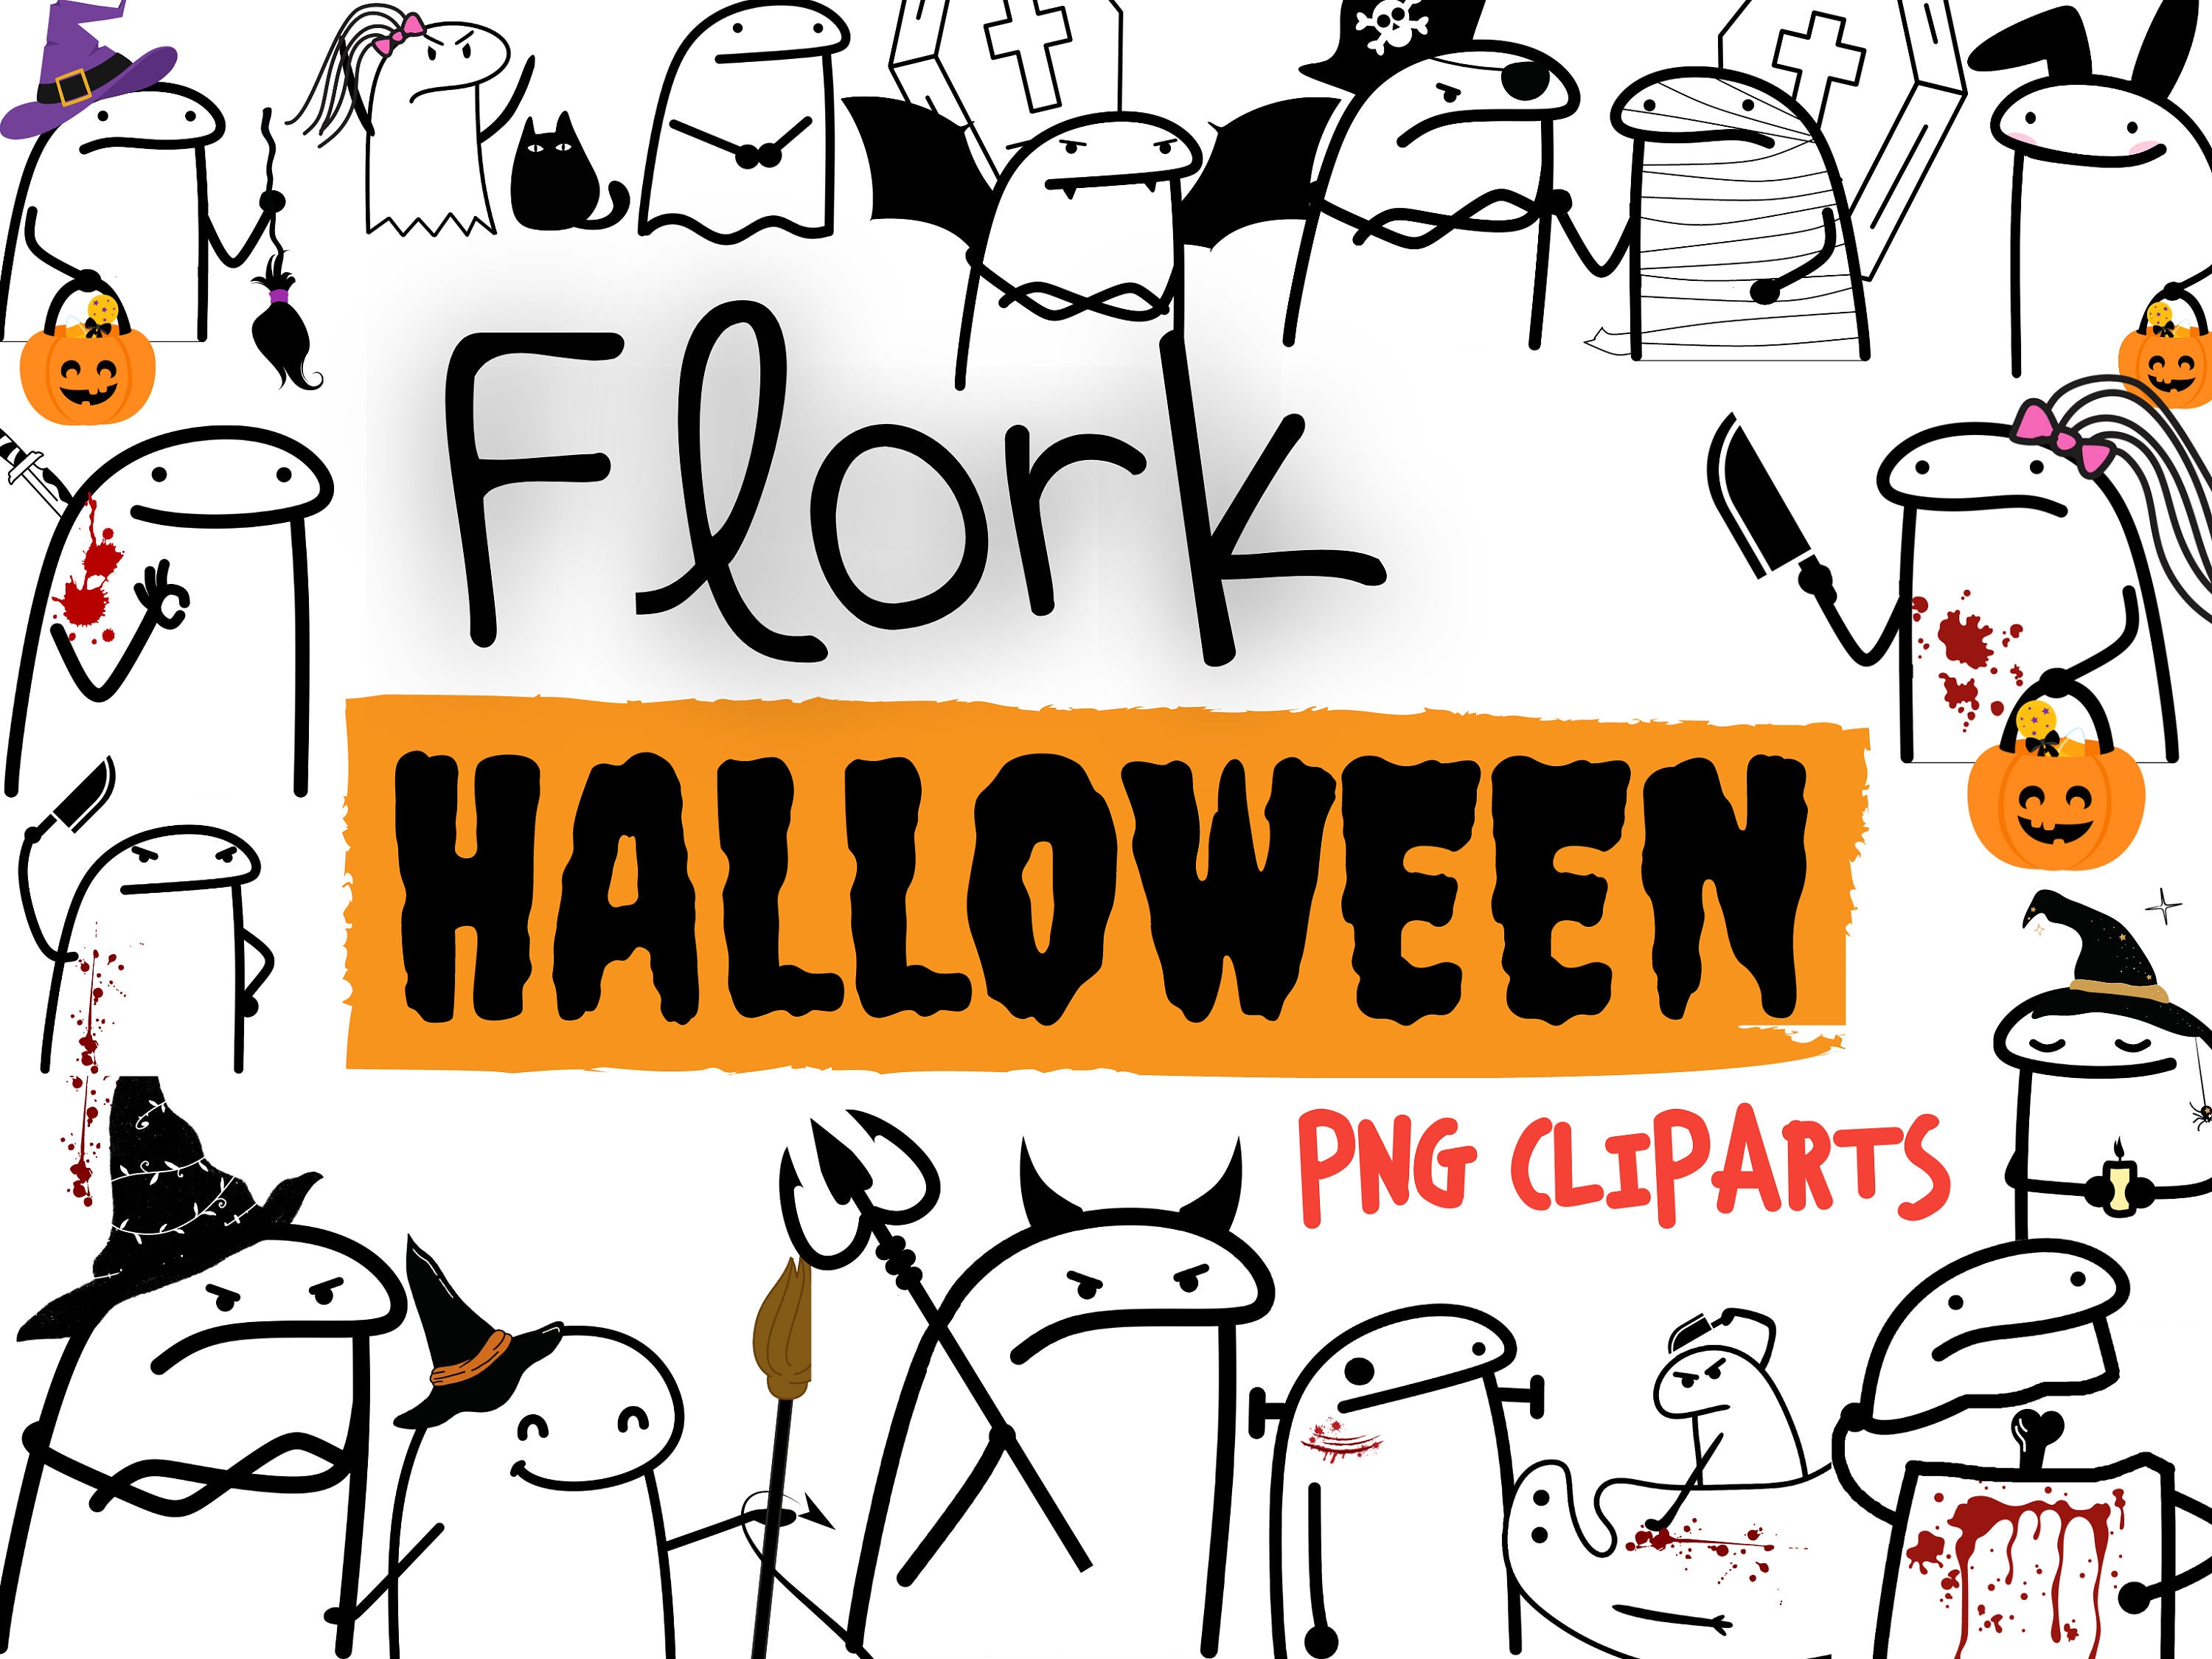 Flork PNG - Imagens PNG  Doodles bonitos, Coisas engraçadas para